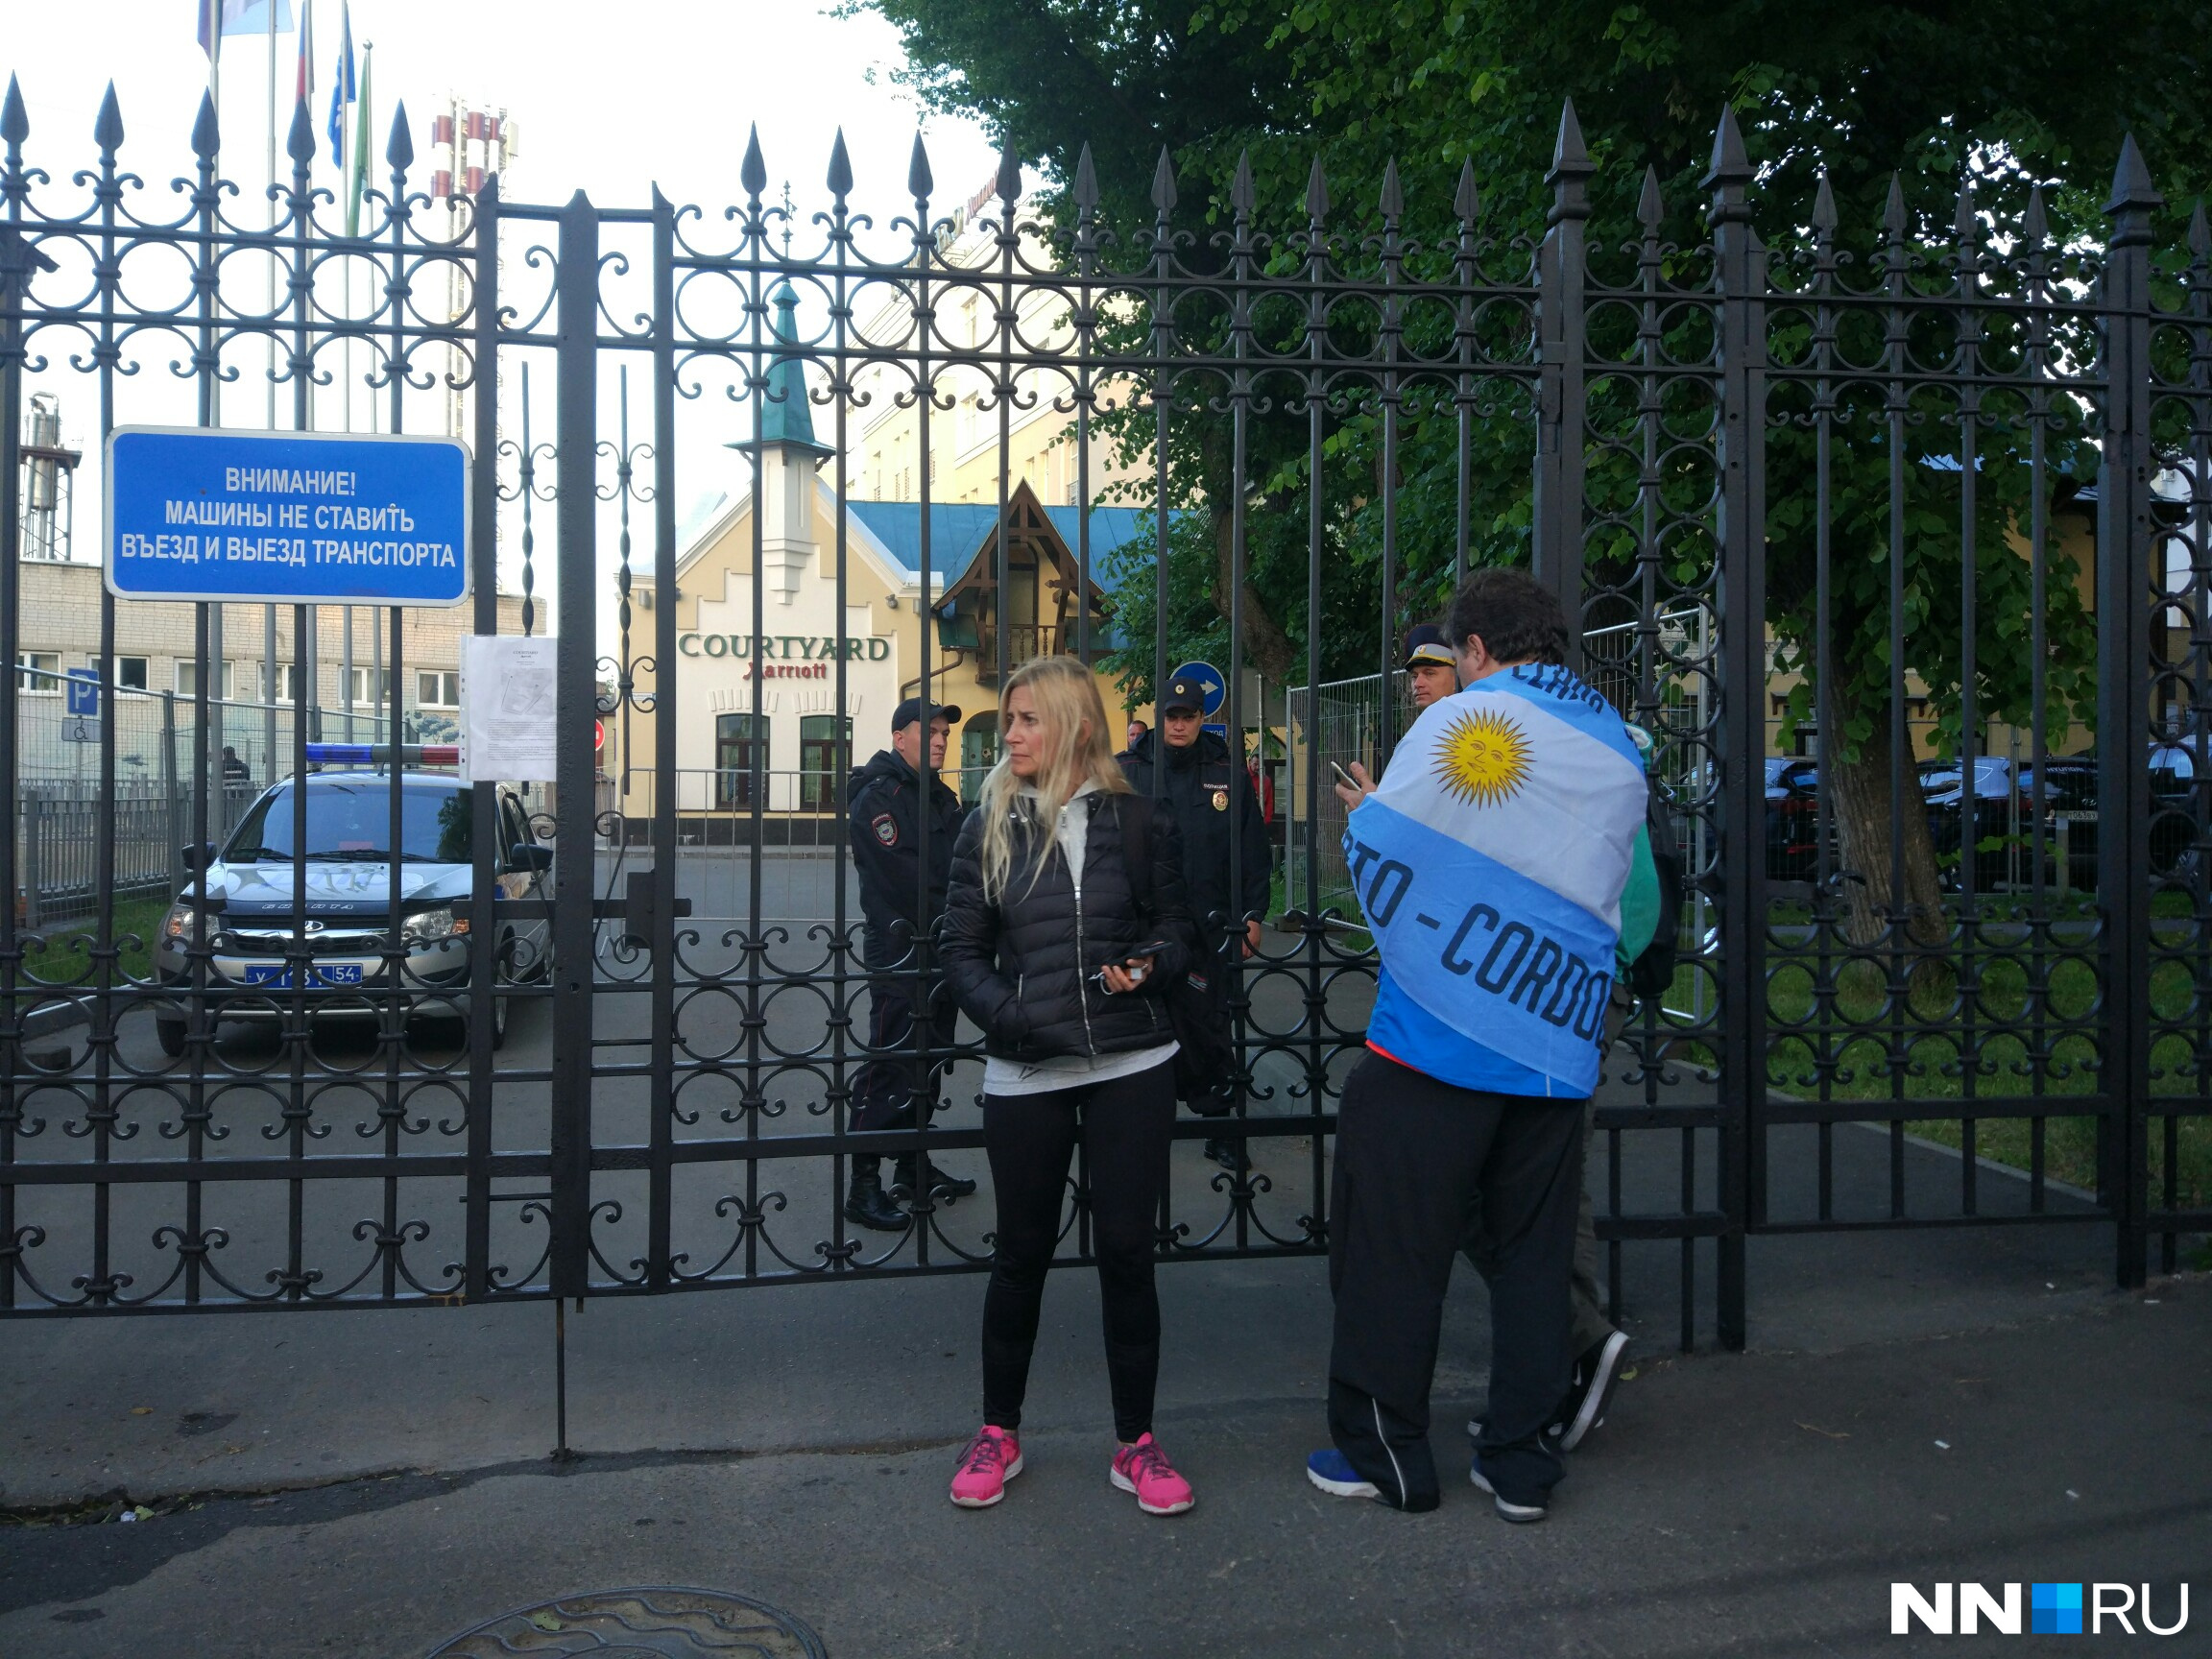 Фанаты Месси осаждают гостиницу в Нижнем Новгороде, где живет команда